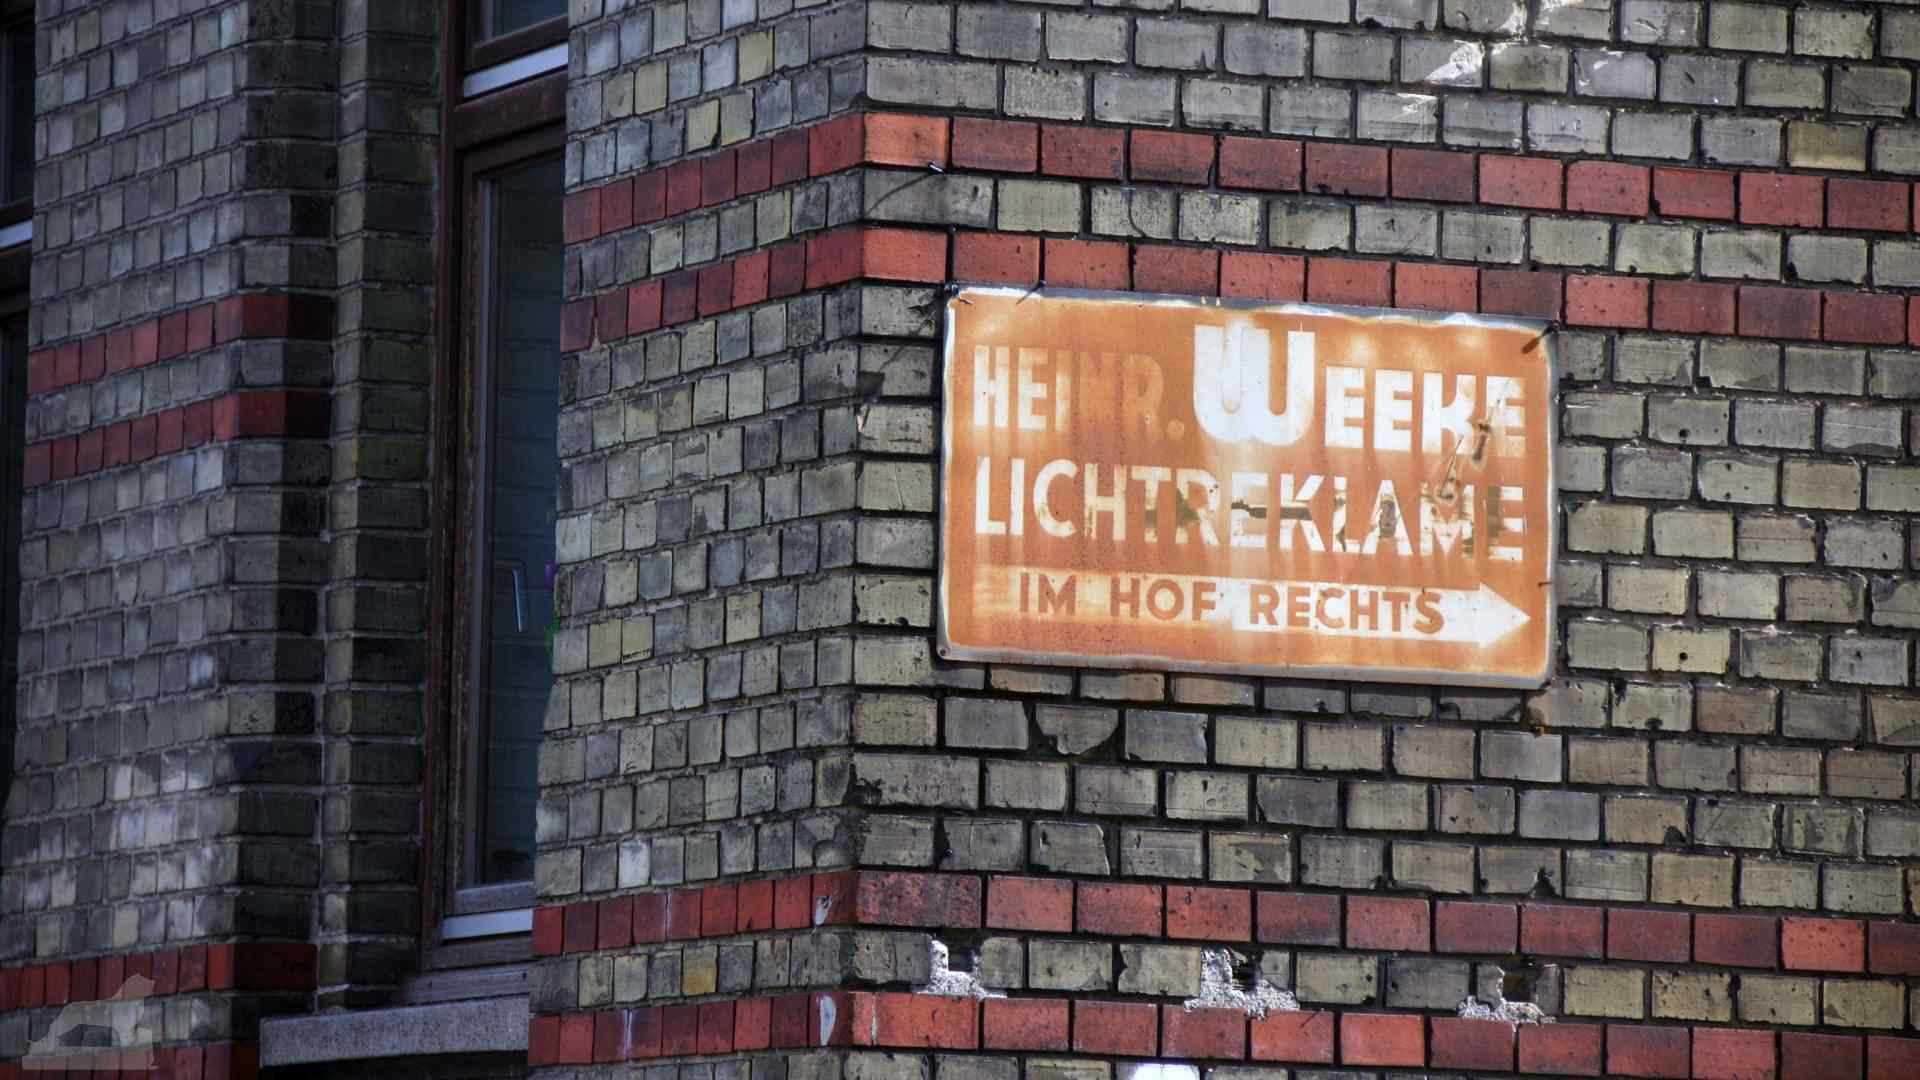 H. Weeke Lichtreklame in der Ludwigstraße